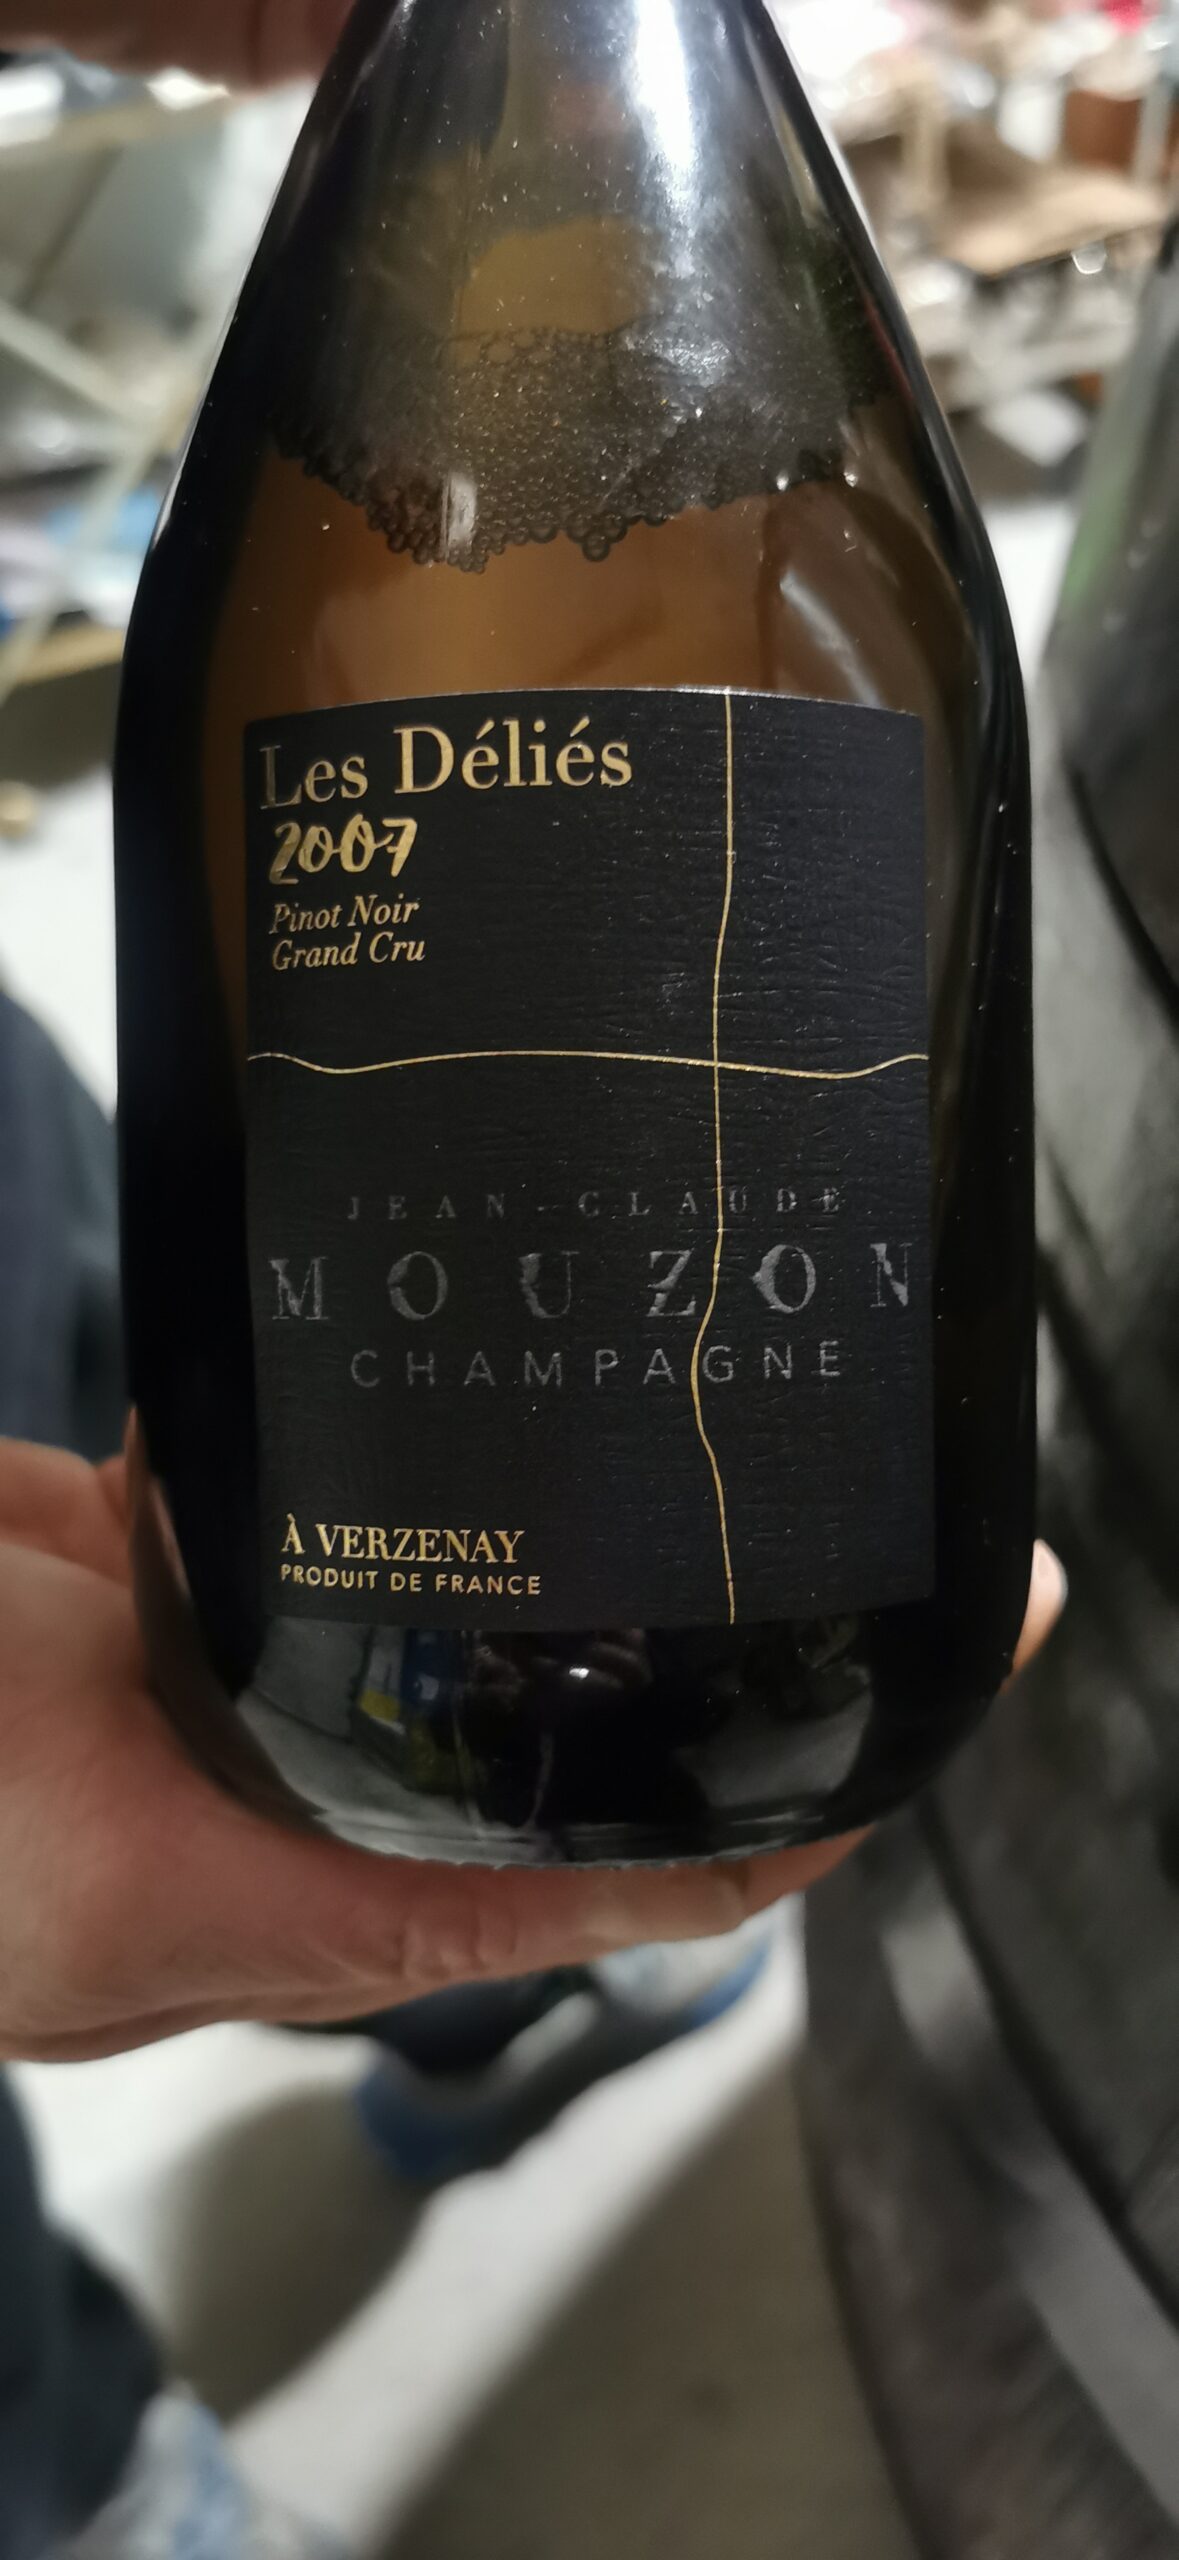 Le Déliés 2007 (100% Pinot Nero) Champagne Jean Claude Mouzon, articolo e foto dell'autrice: Elsa Leandri in Champagne 2024, seconda tappa a Verzenay